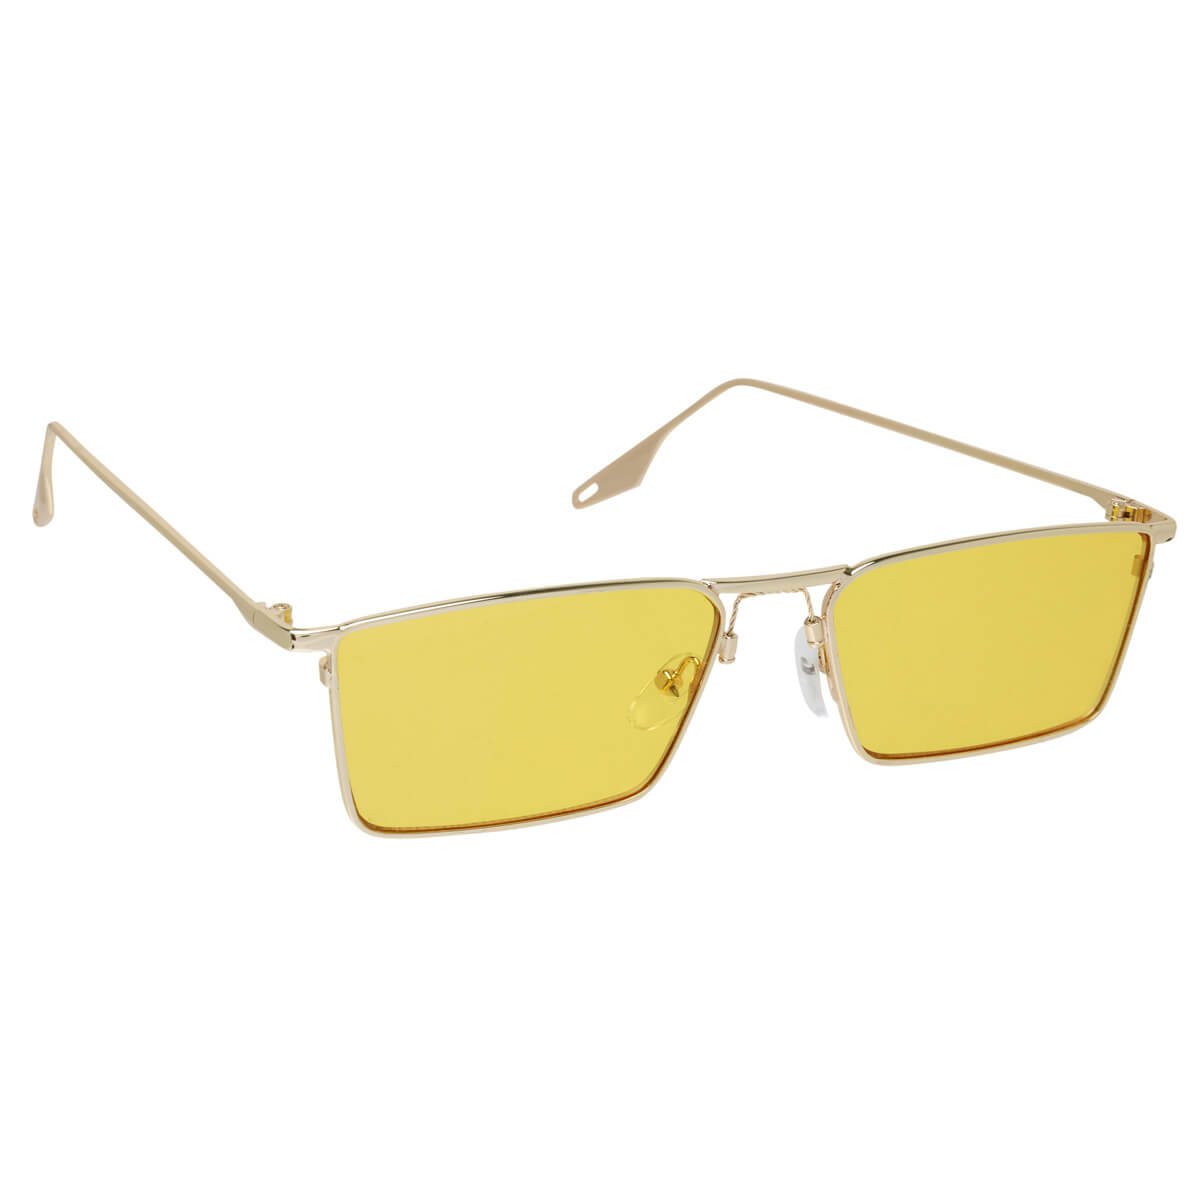 Metal -framed rectangular sunglasses